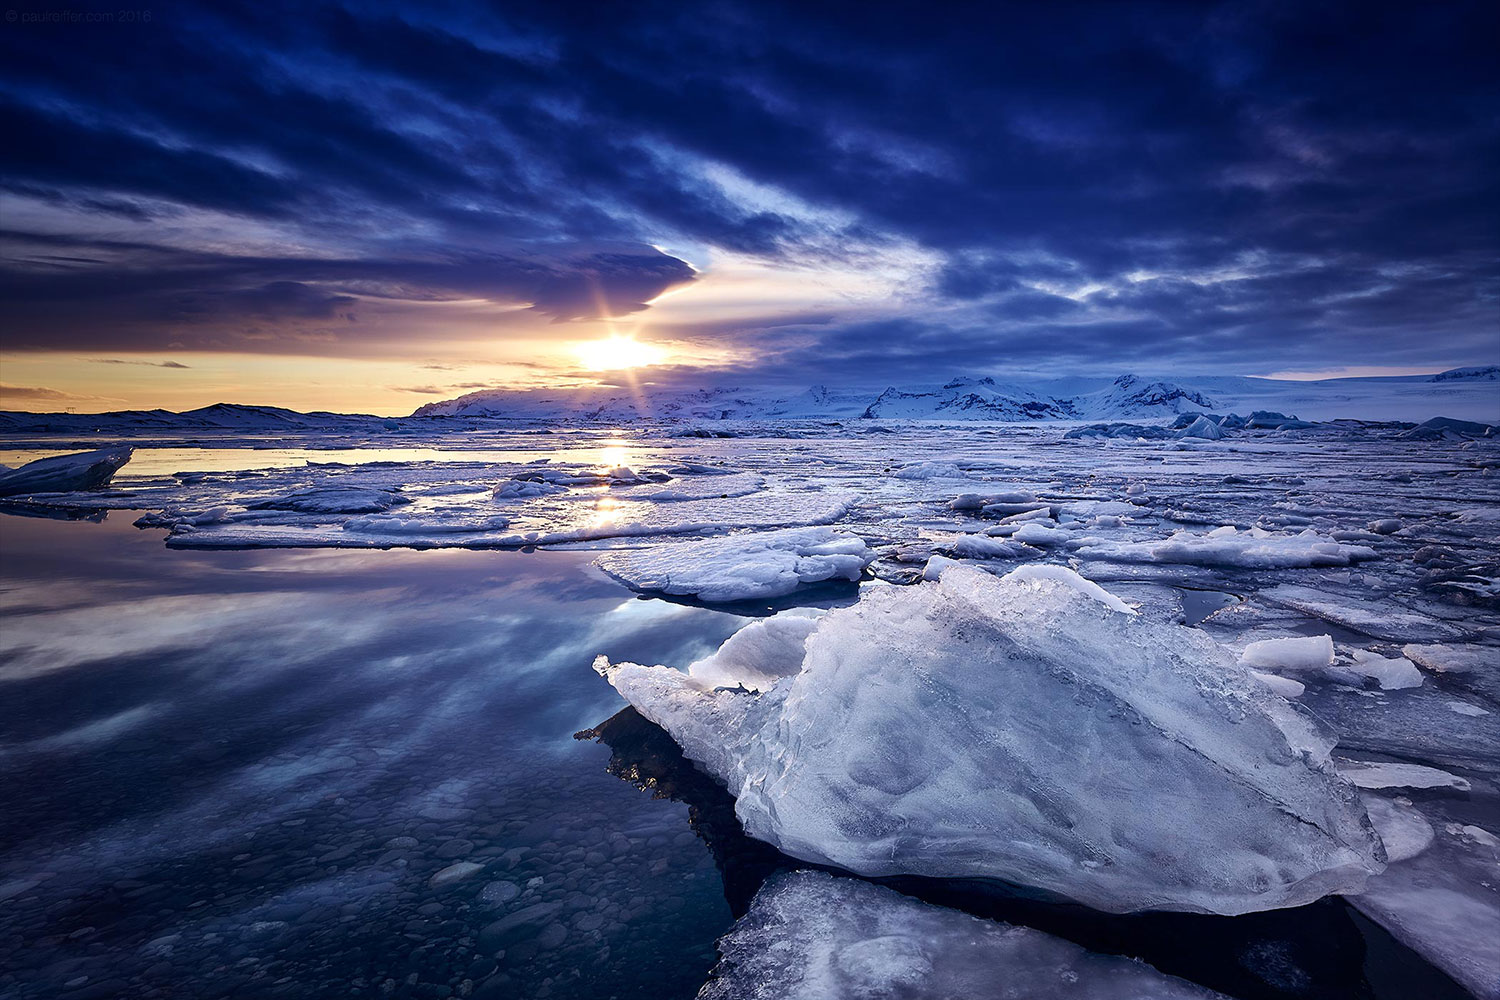 Iceland Featured Image Paul Reiffer Professional Photographer 2016 Winter Jokulsarlon Lagoon Ice Sunset